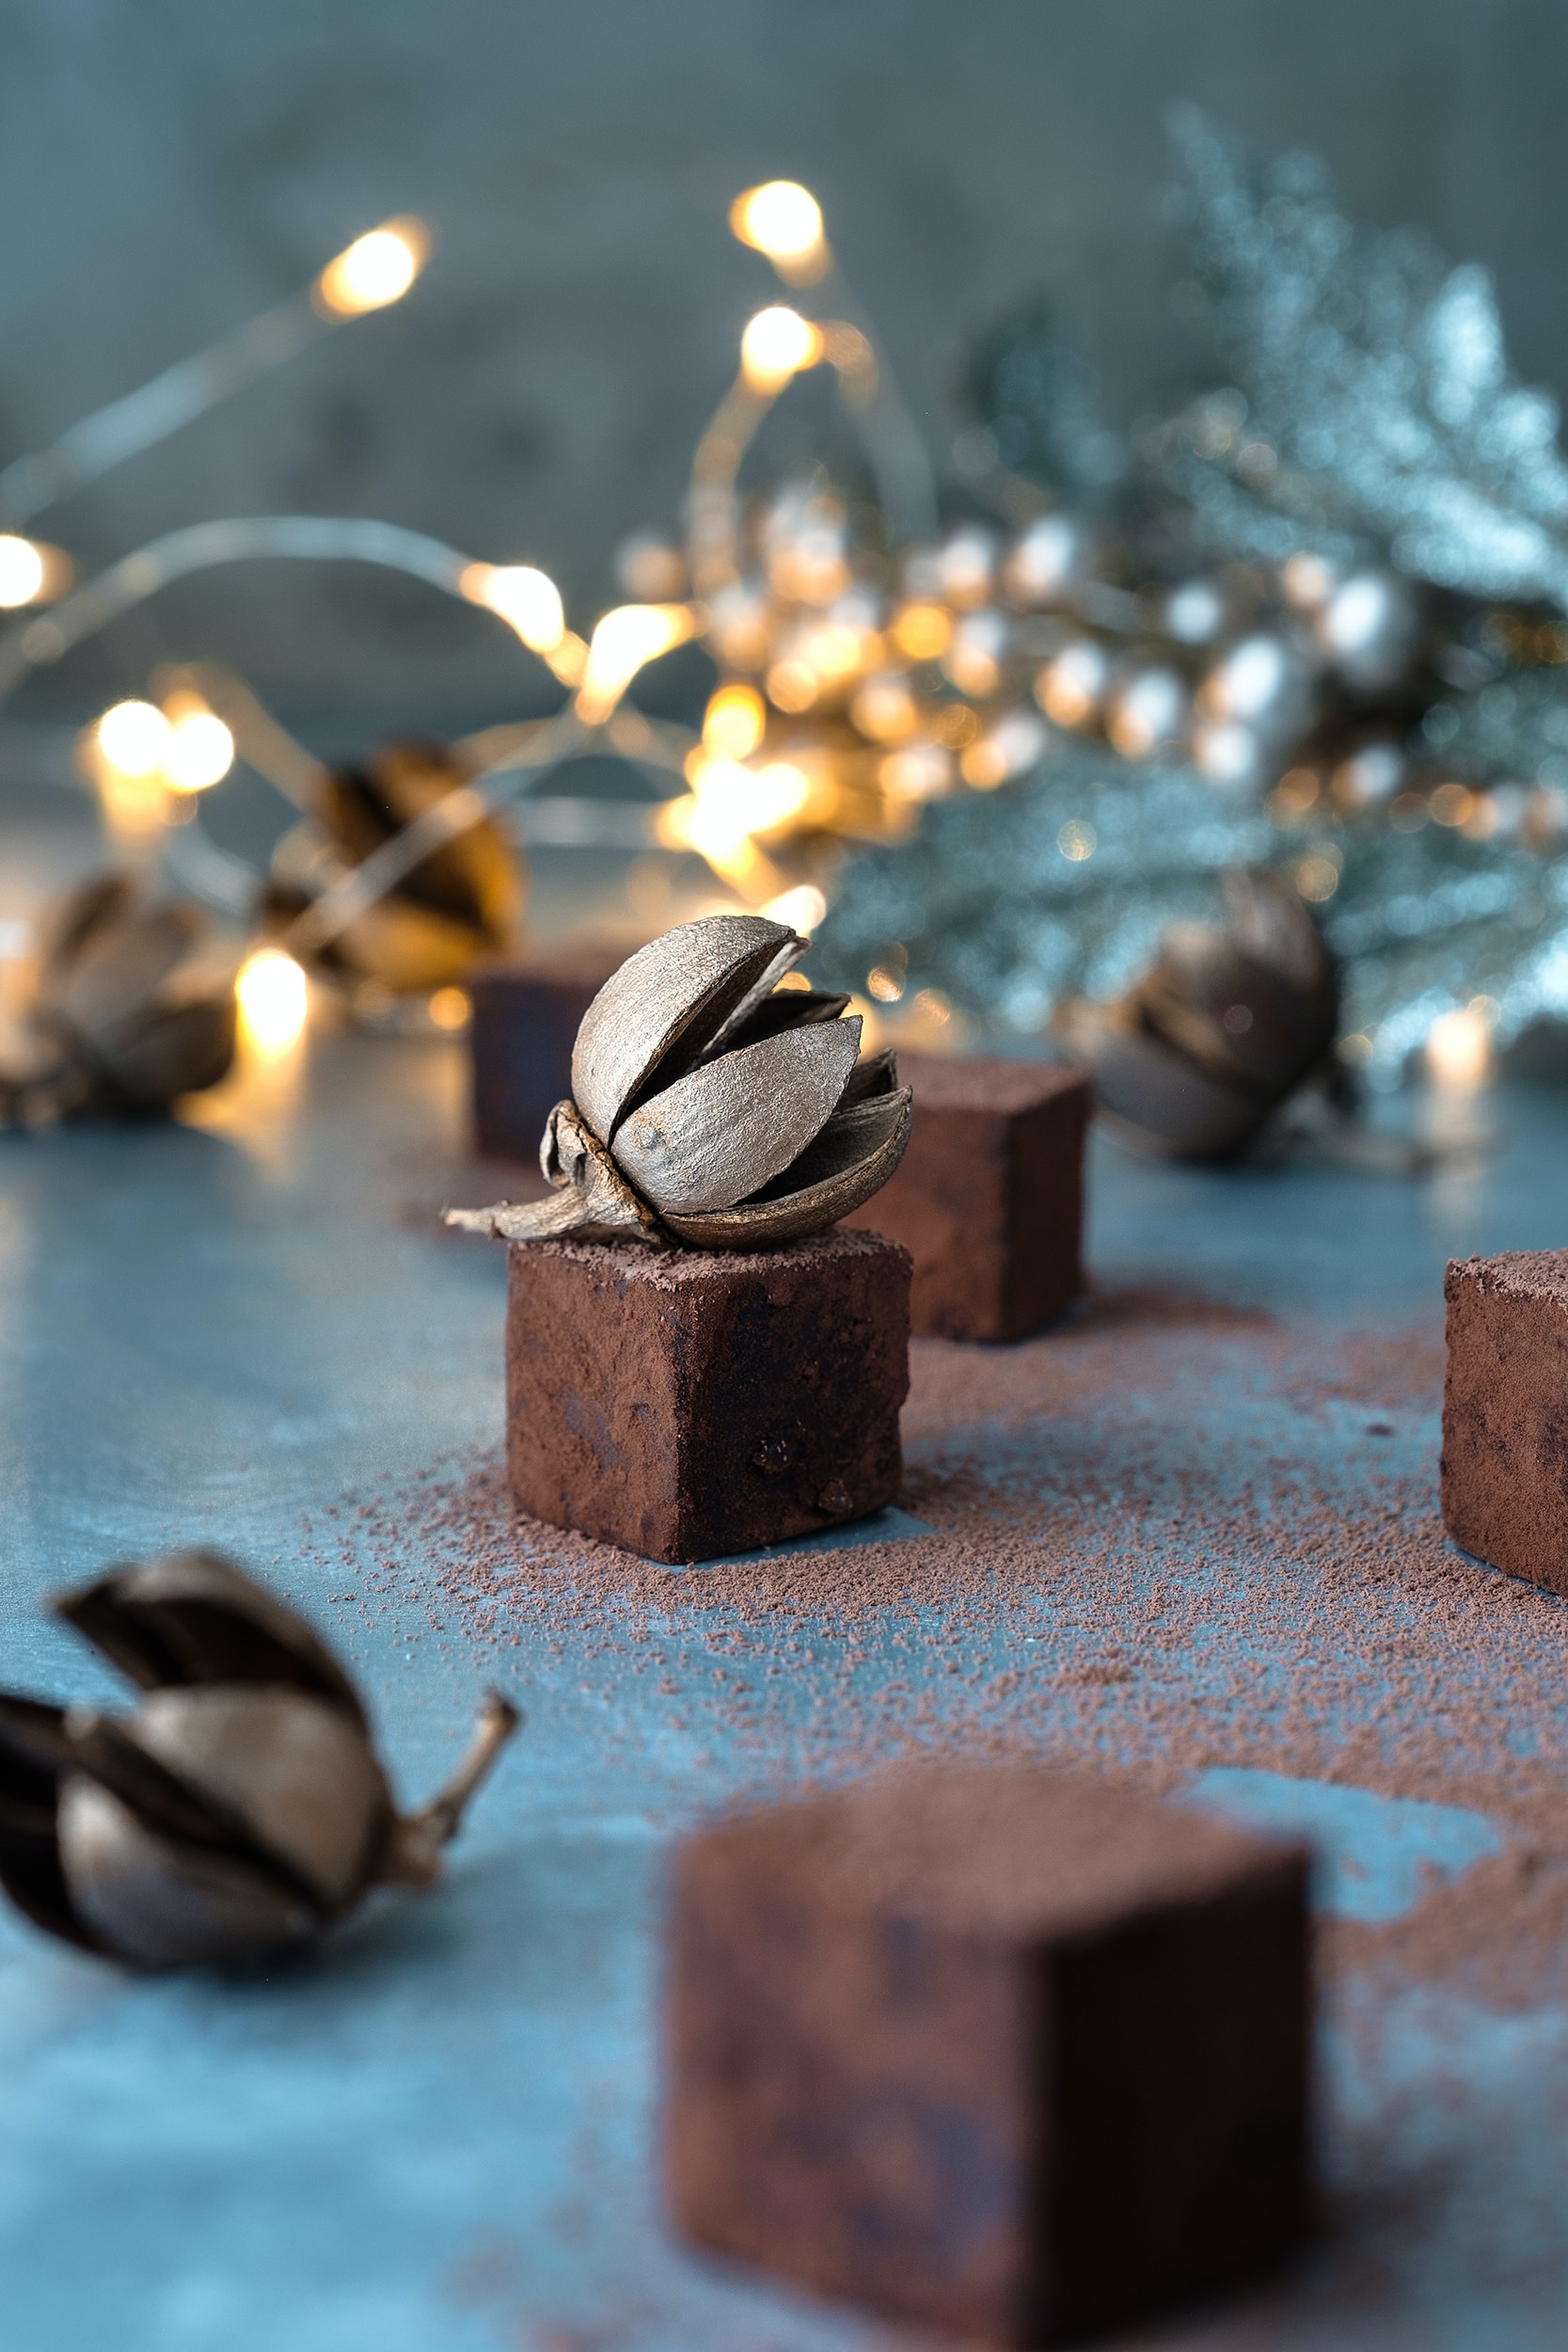 Με τις αλατισμένες τρούφες σοκολάτας καραμέλας με φυστικοβούτυρο ο Άγιος Βασίλης θα σε ευχαριστεί